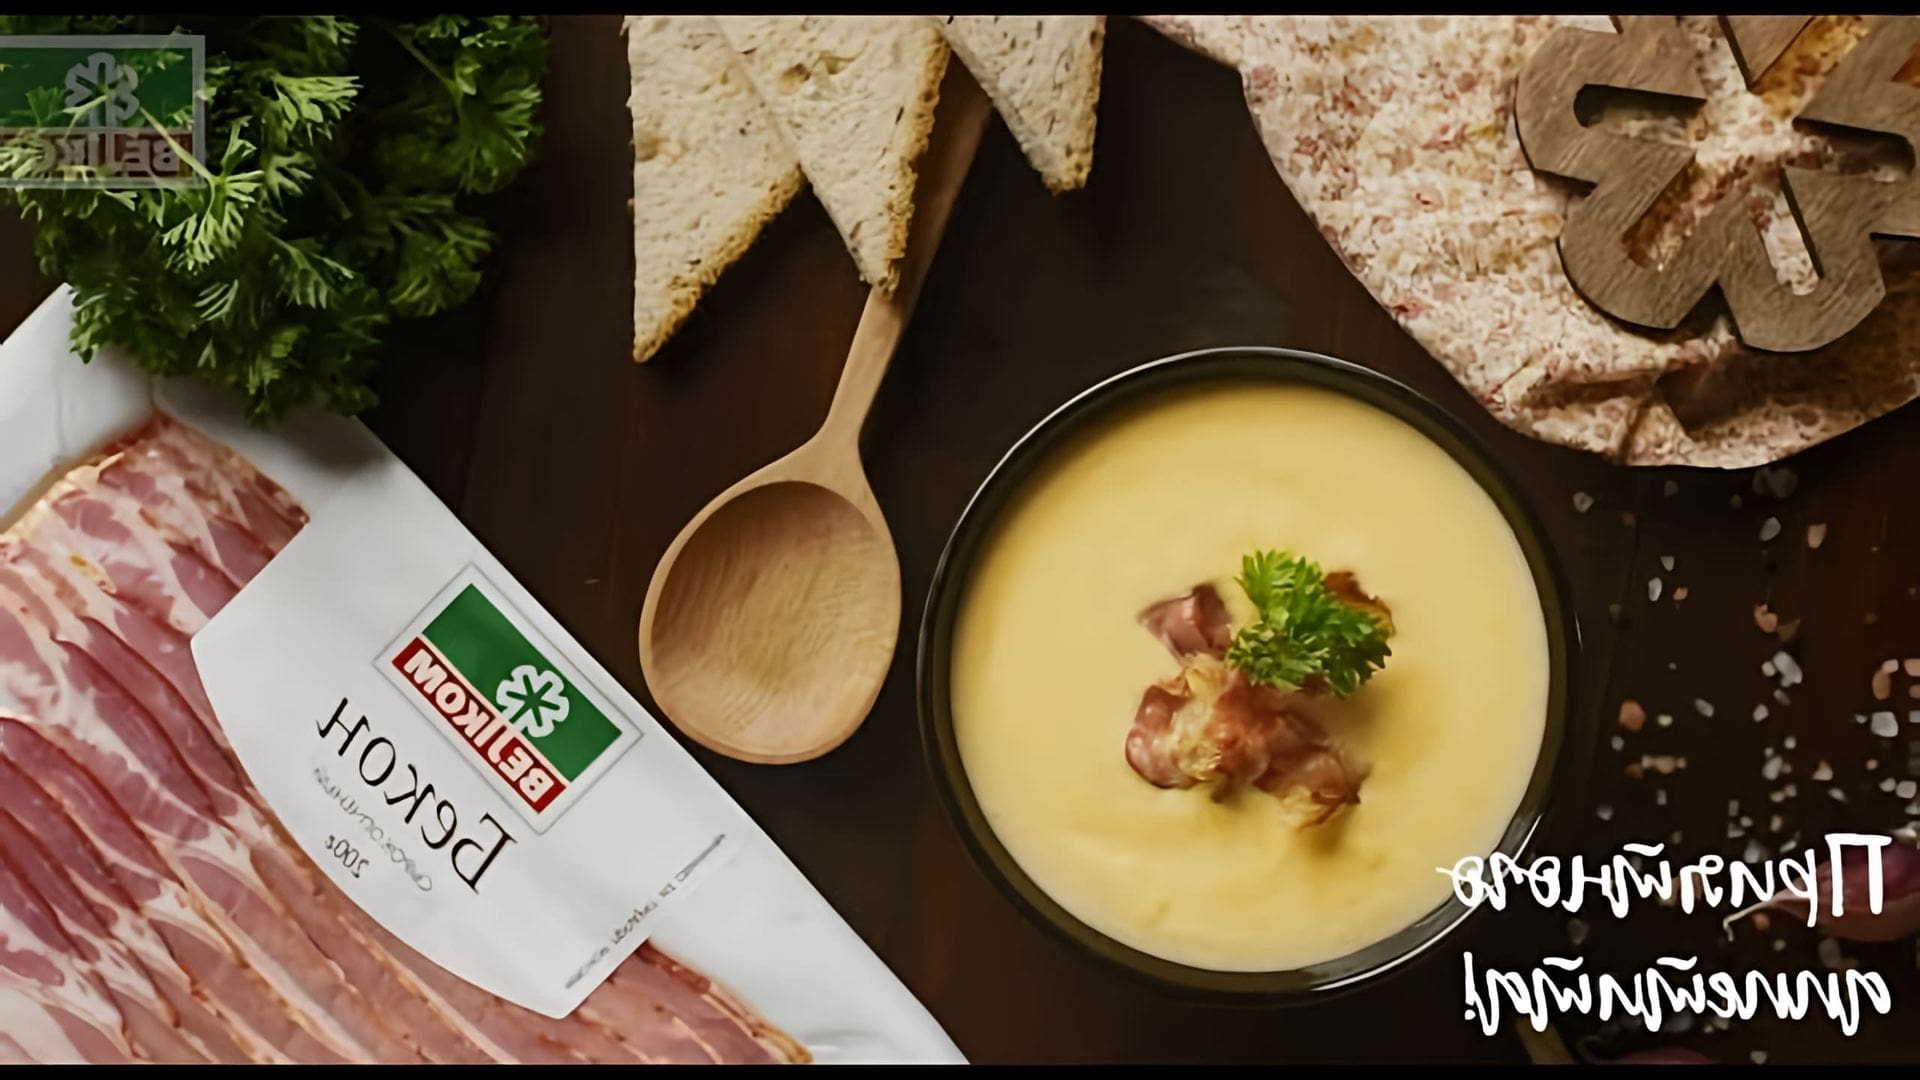 Сырный крем-суп с беконом от Велком - это вкусное и питательное блюдо, которое можно приготовить в домашних условиях